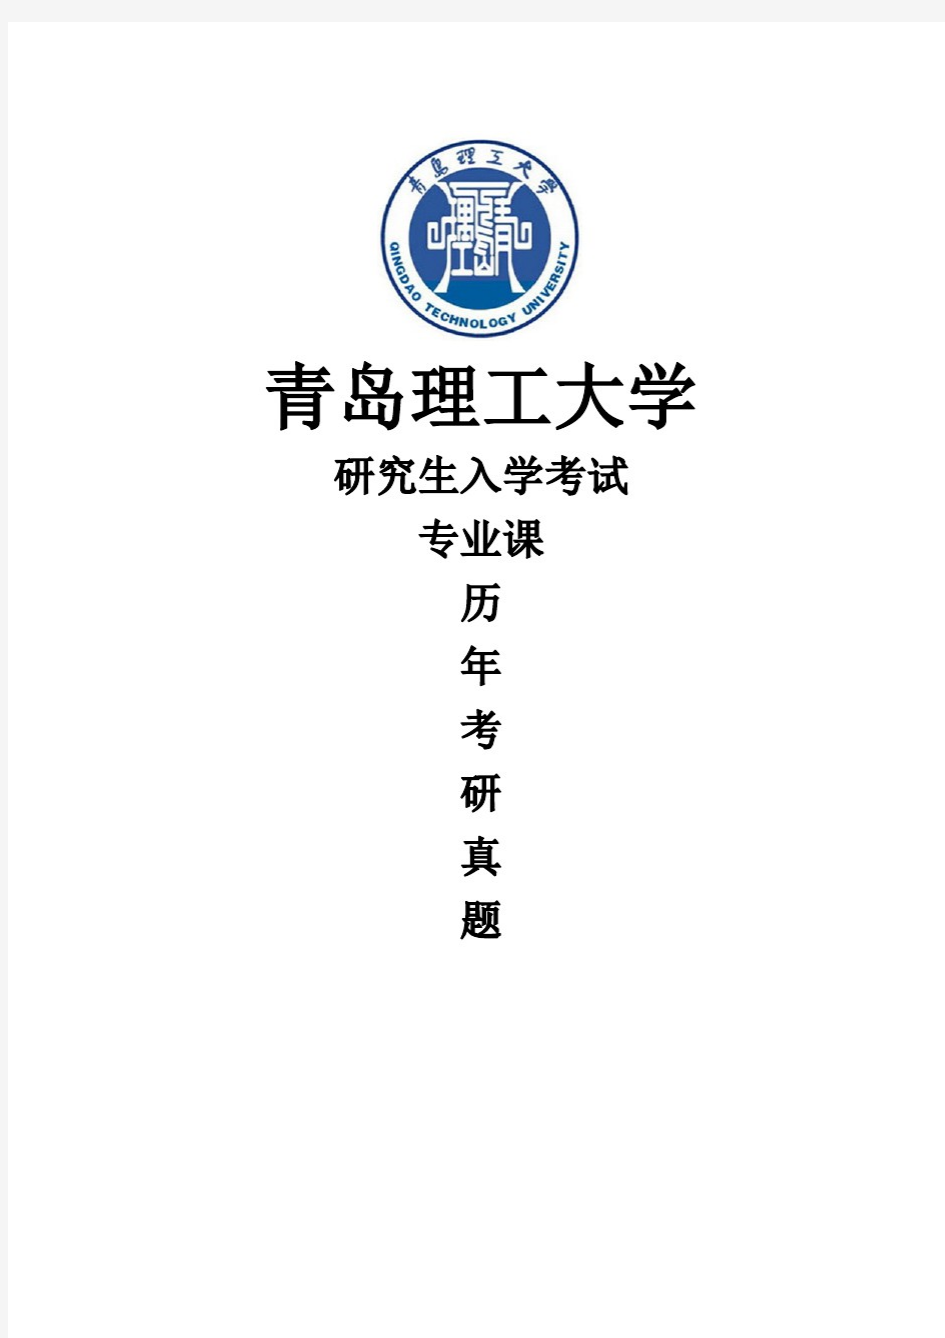 青岛理工大学《计算机通信与网络》[官方]历年考研真题(2015-2019)完整版